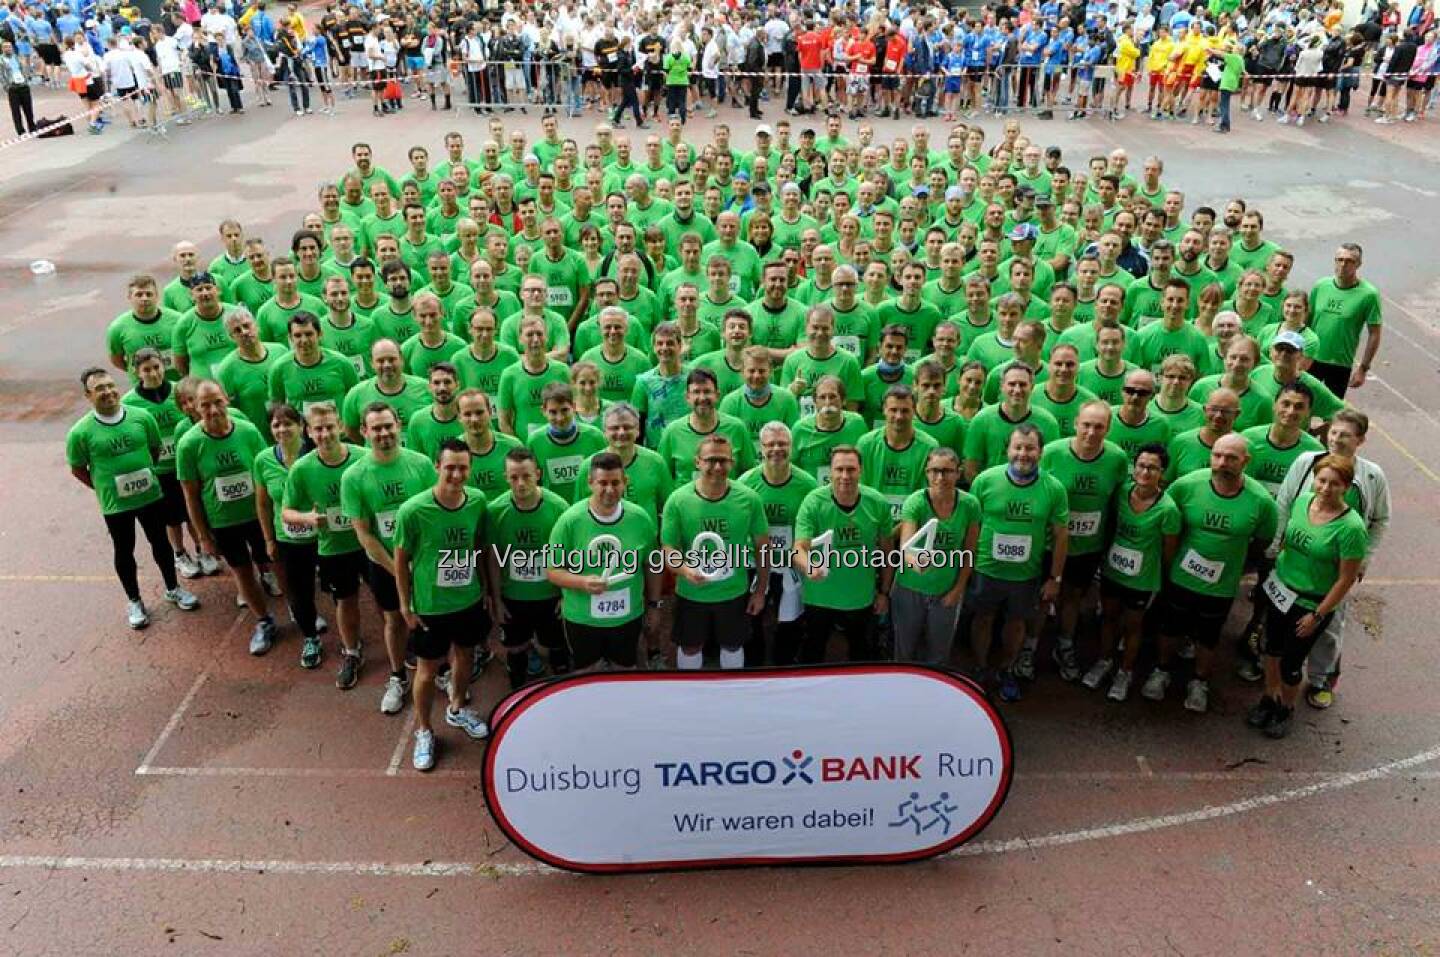 557 Mitarbeiter, 5,9 km und ganz viel Sportsgeist – Beim 9. Targobank Run in Duisburg war #ThyssenKrupp mit dem größten Team am Start! Danke an alle Läuferinnen und Läufer!  Source: http://facebook.com/ThyssenKruppCareer